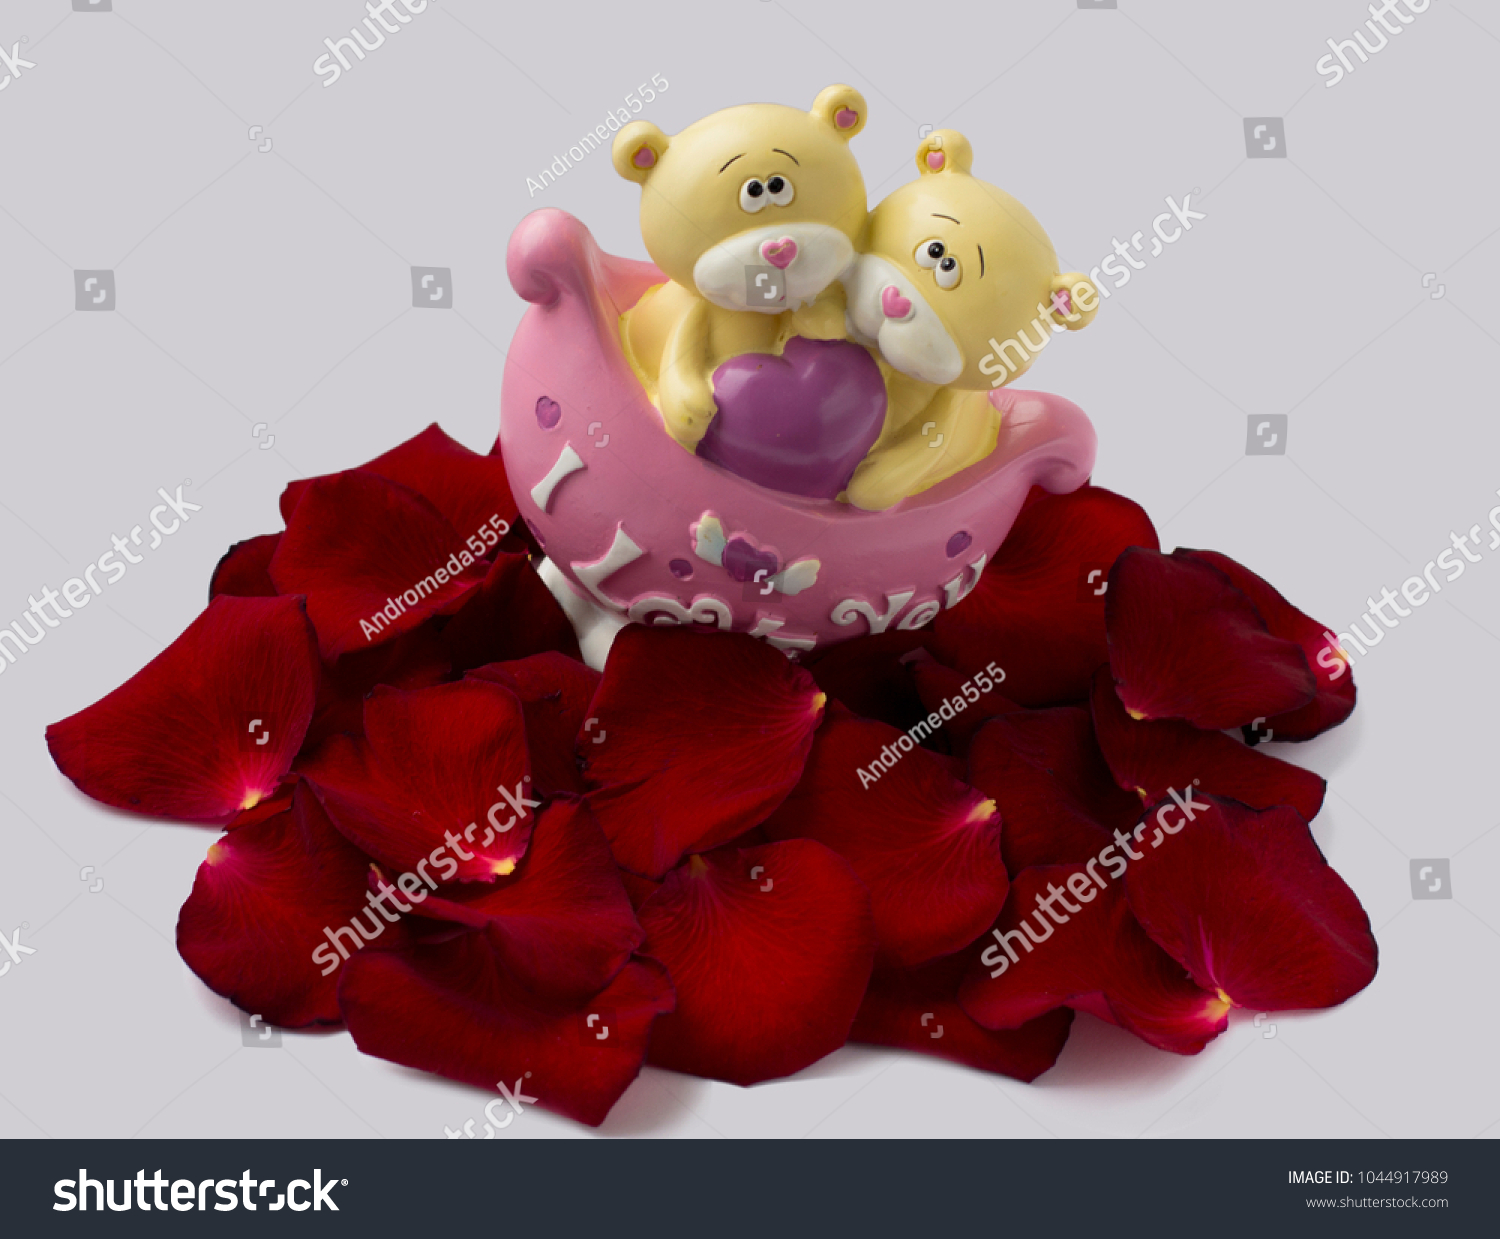 rose petal bears